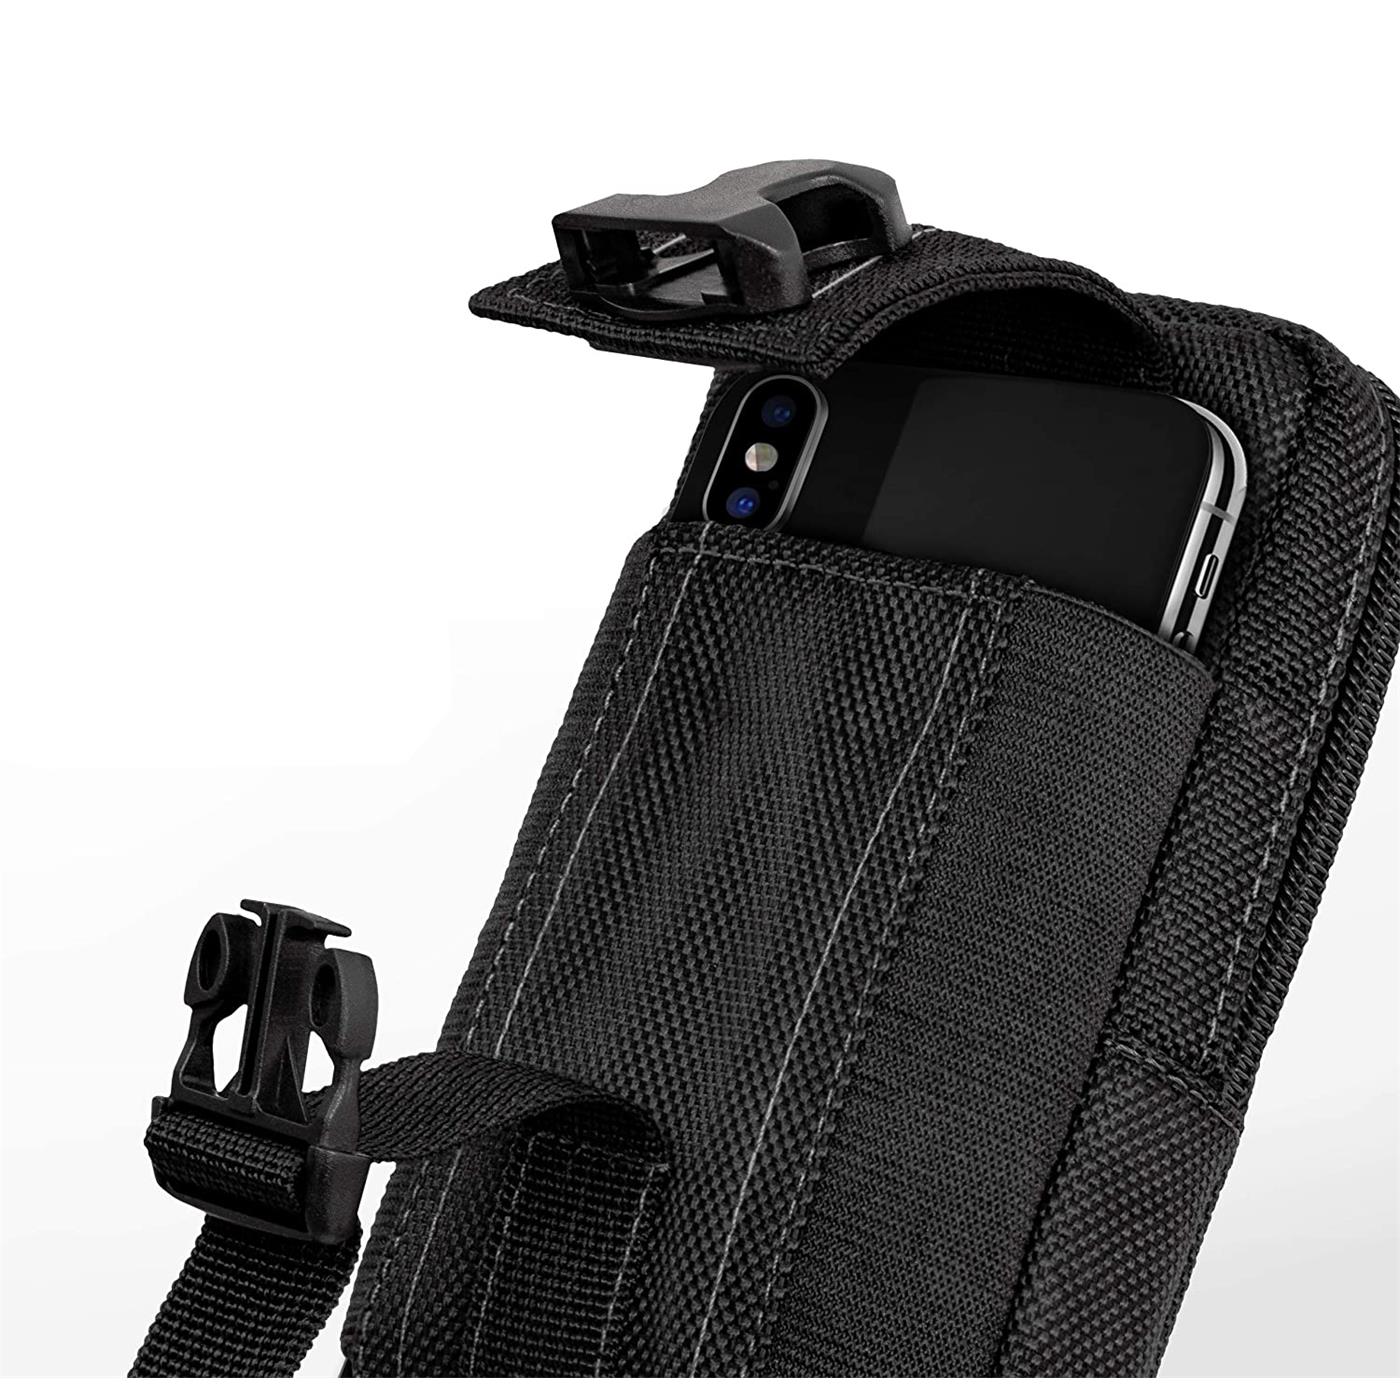 Indexbild 5 - Gürtel Tasche Für Samsung Galaxy Handy Hülle Schutzhülle Case Clip Etui Nylon